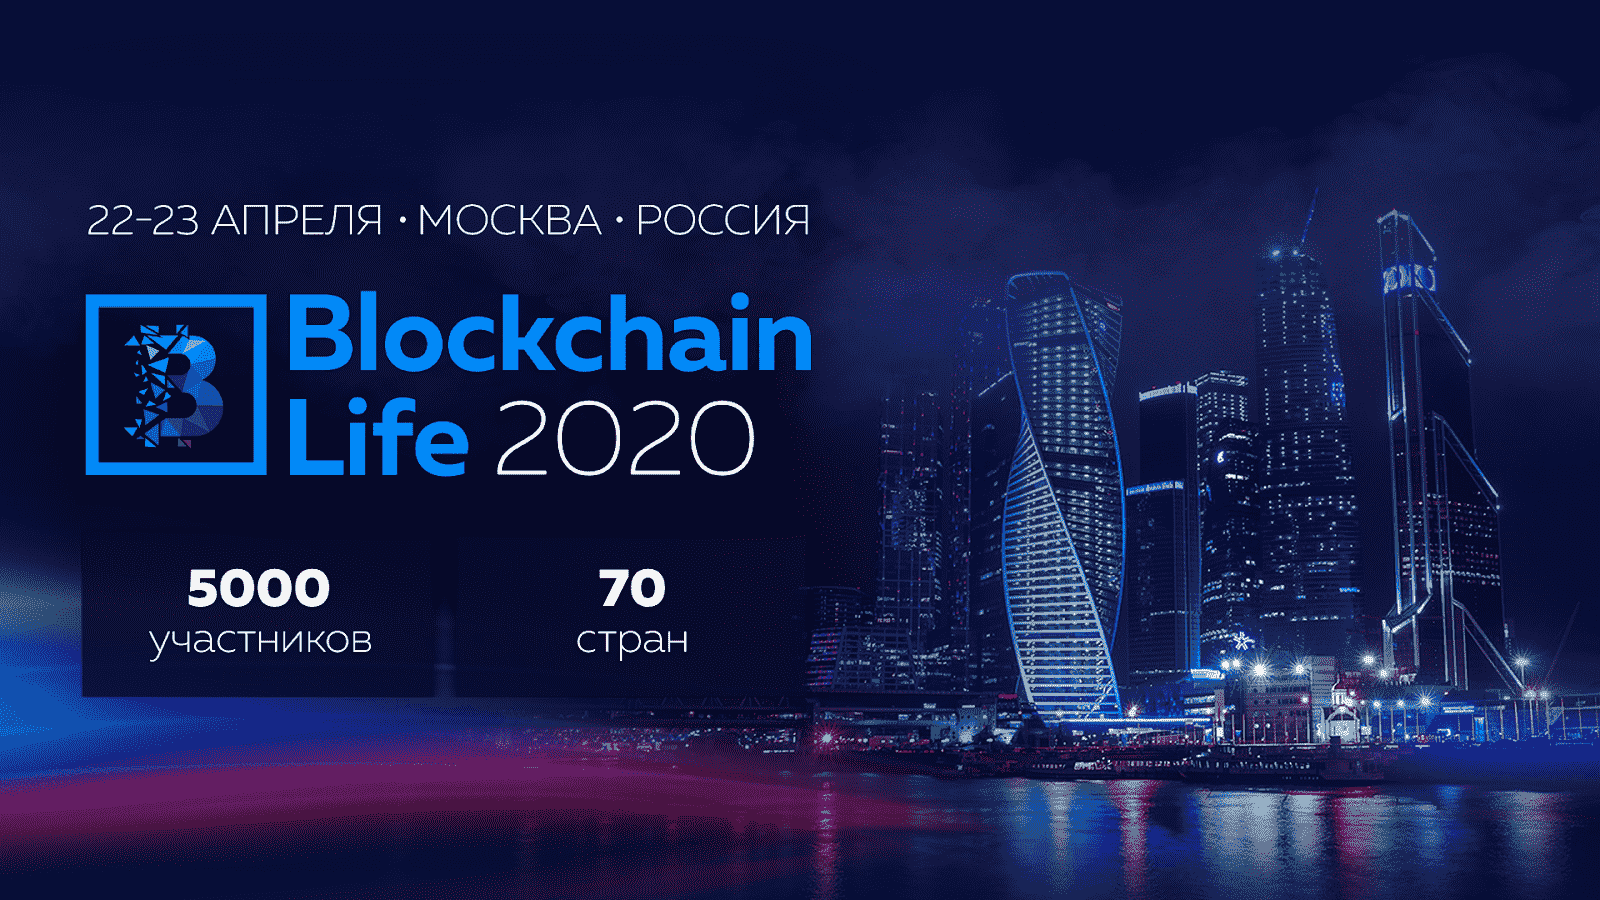 Пятый  международный форум Blockchain Life 2020 состоится в Москве 22-23 апреля